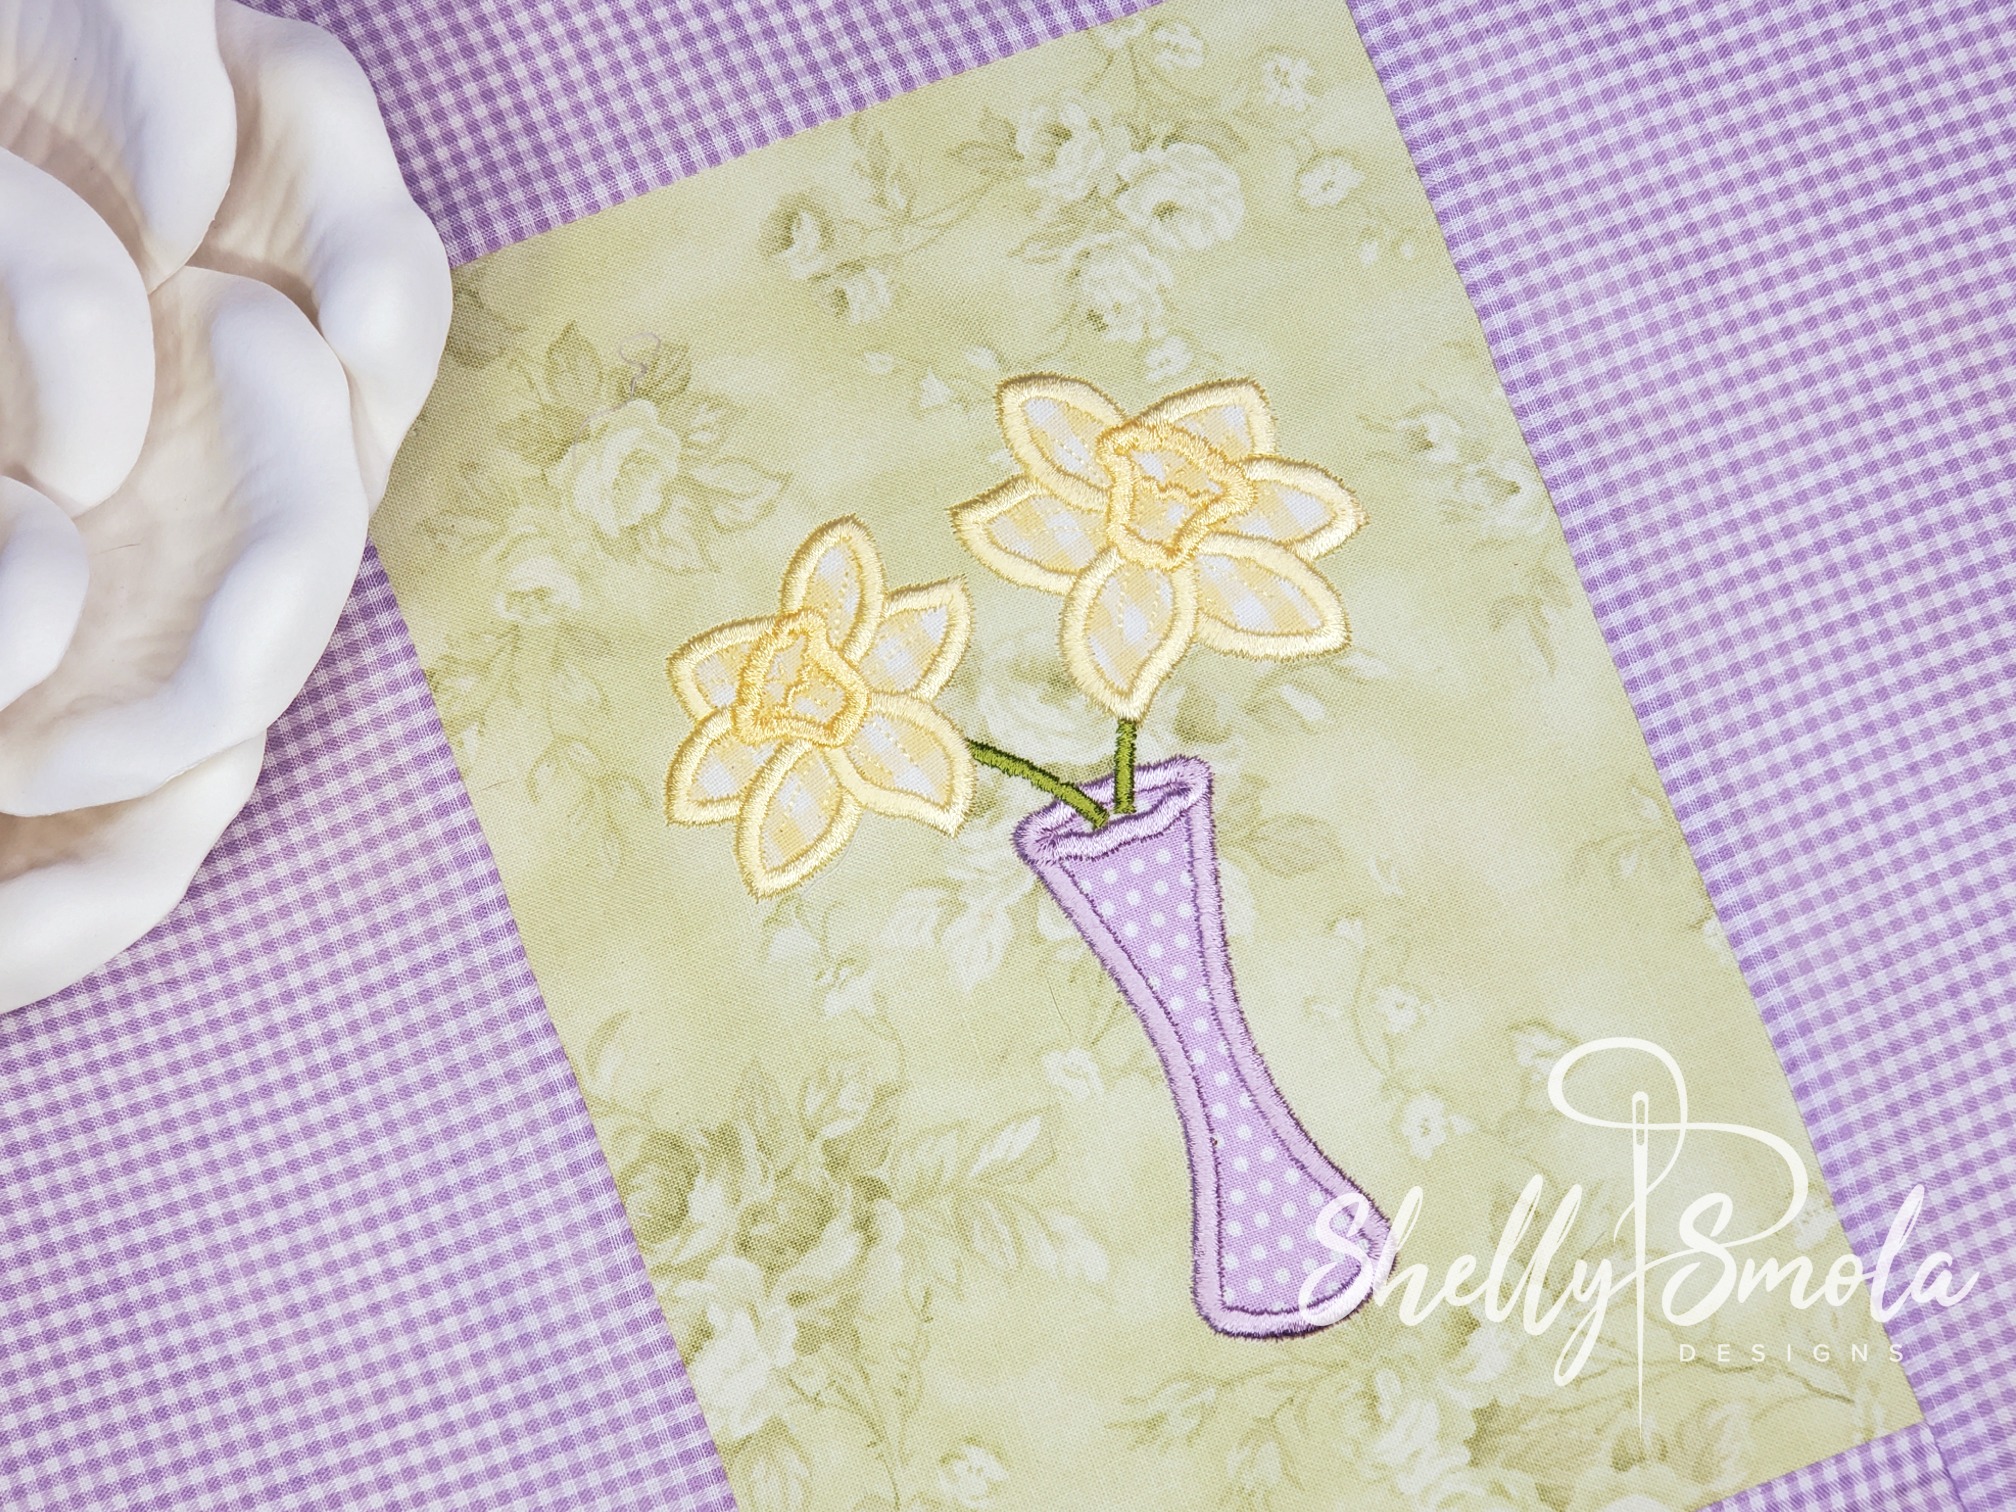 Daffodil Applique by Shelly Smola